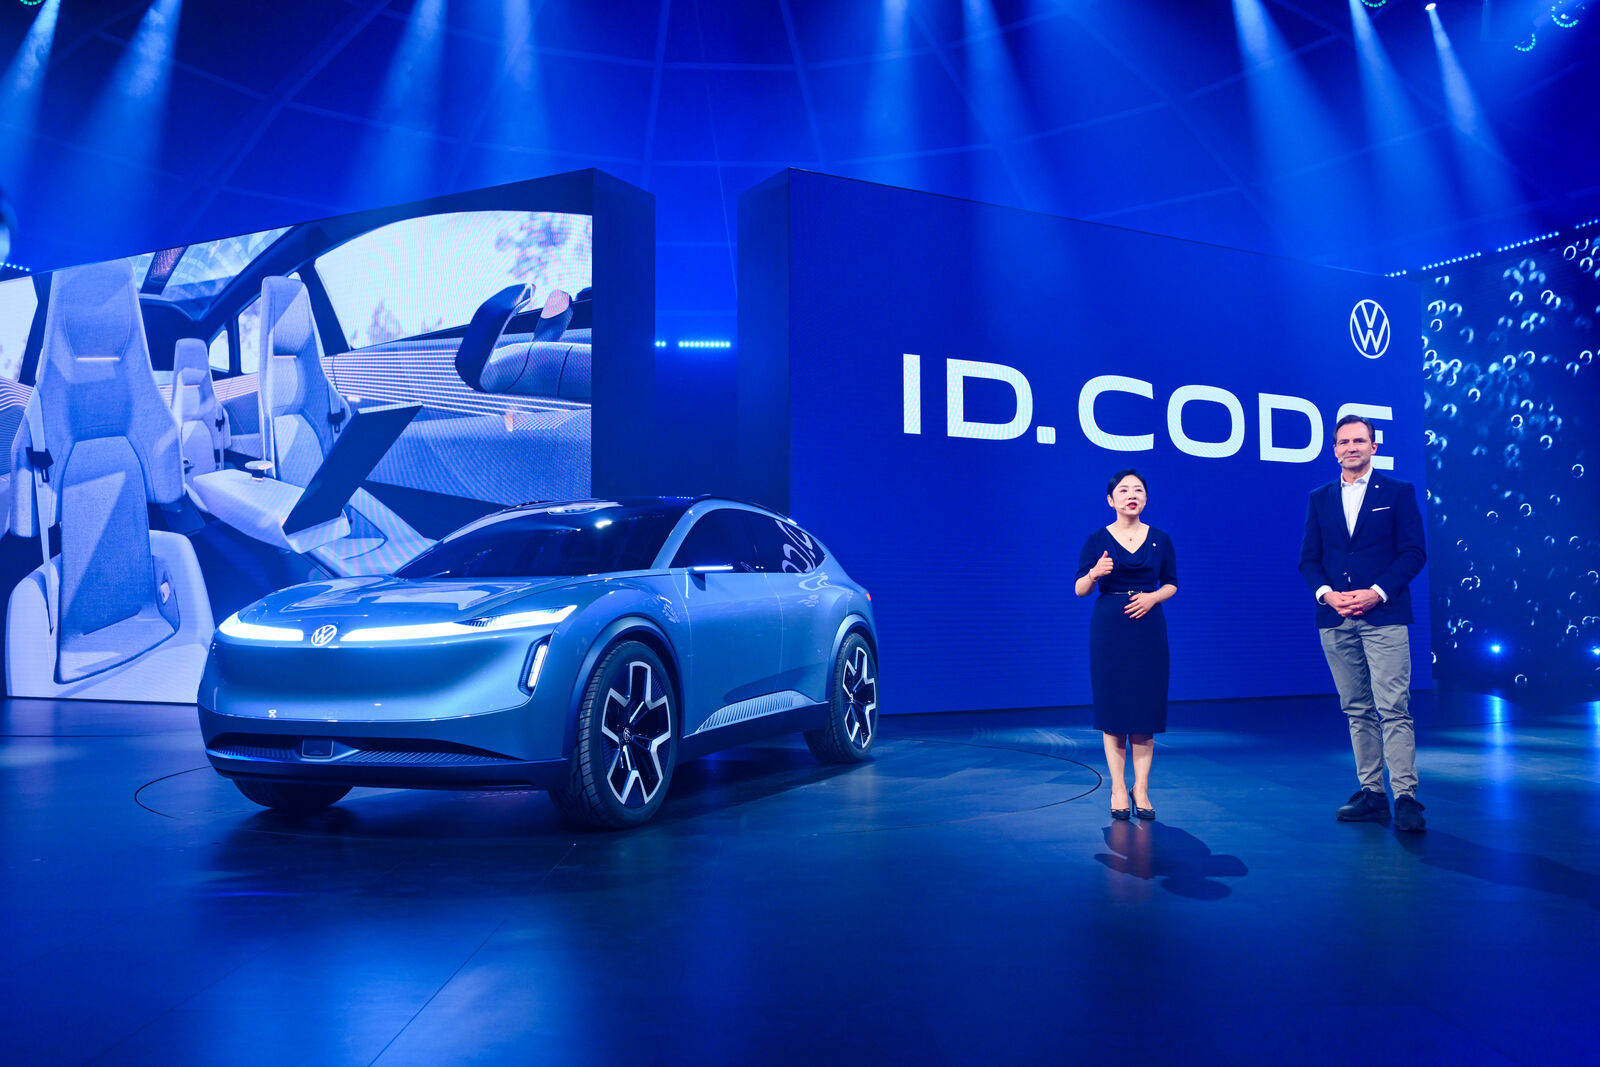 Ein metallisch-blauer Volkswagen ID. Code SUV-Konzept wird unter heller blauer Beleuchtung in einem futuristischen Ausstellungsraum gezeigt.